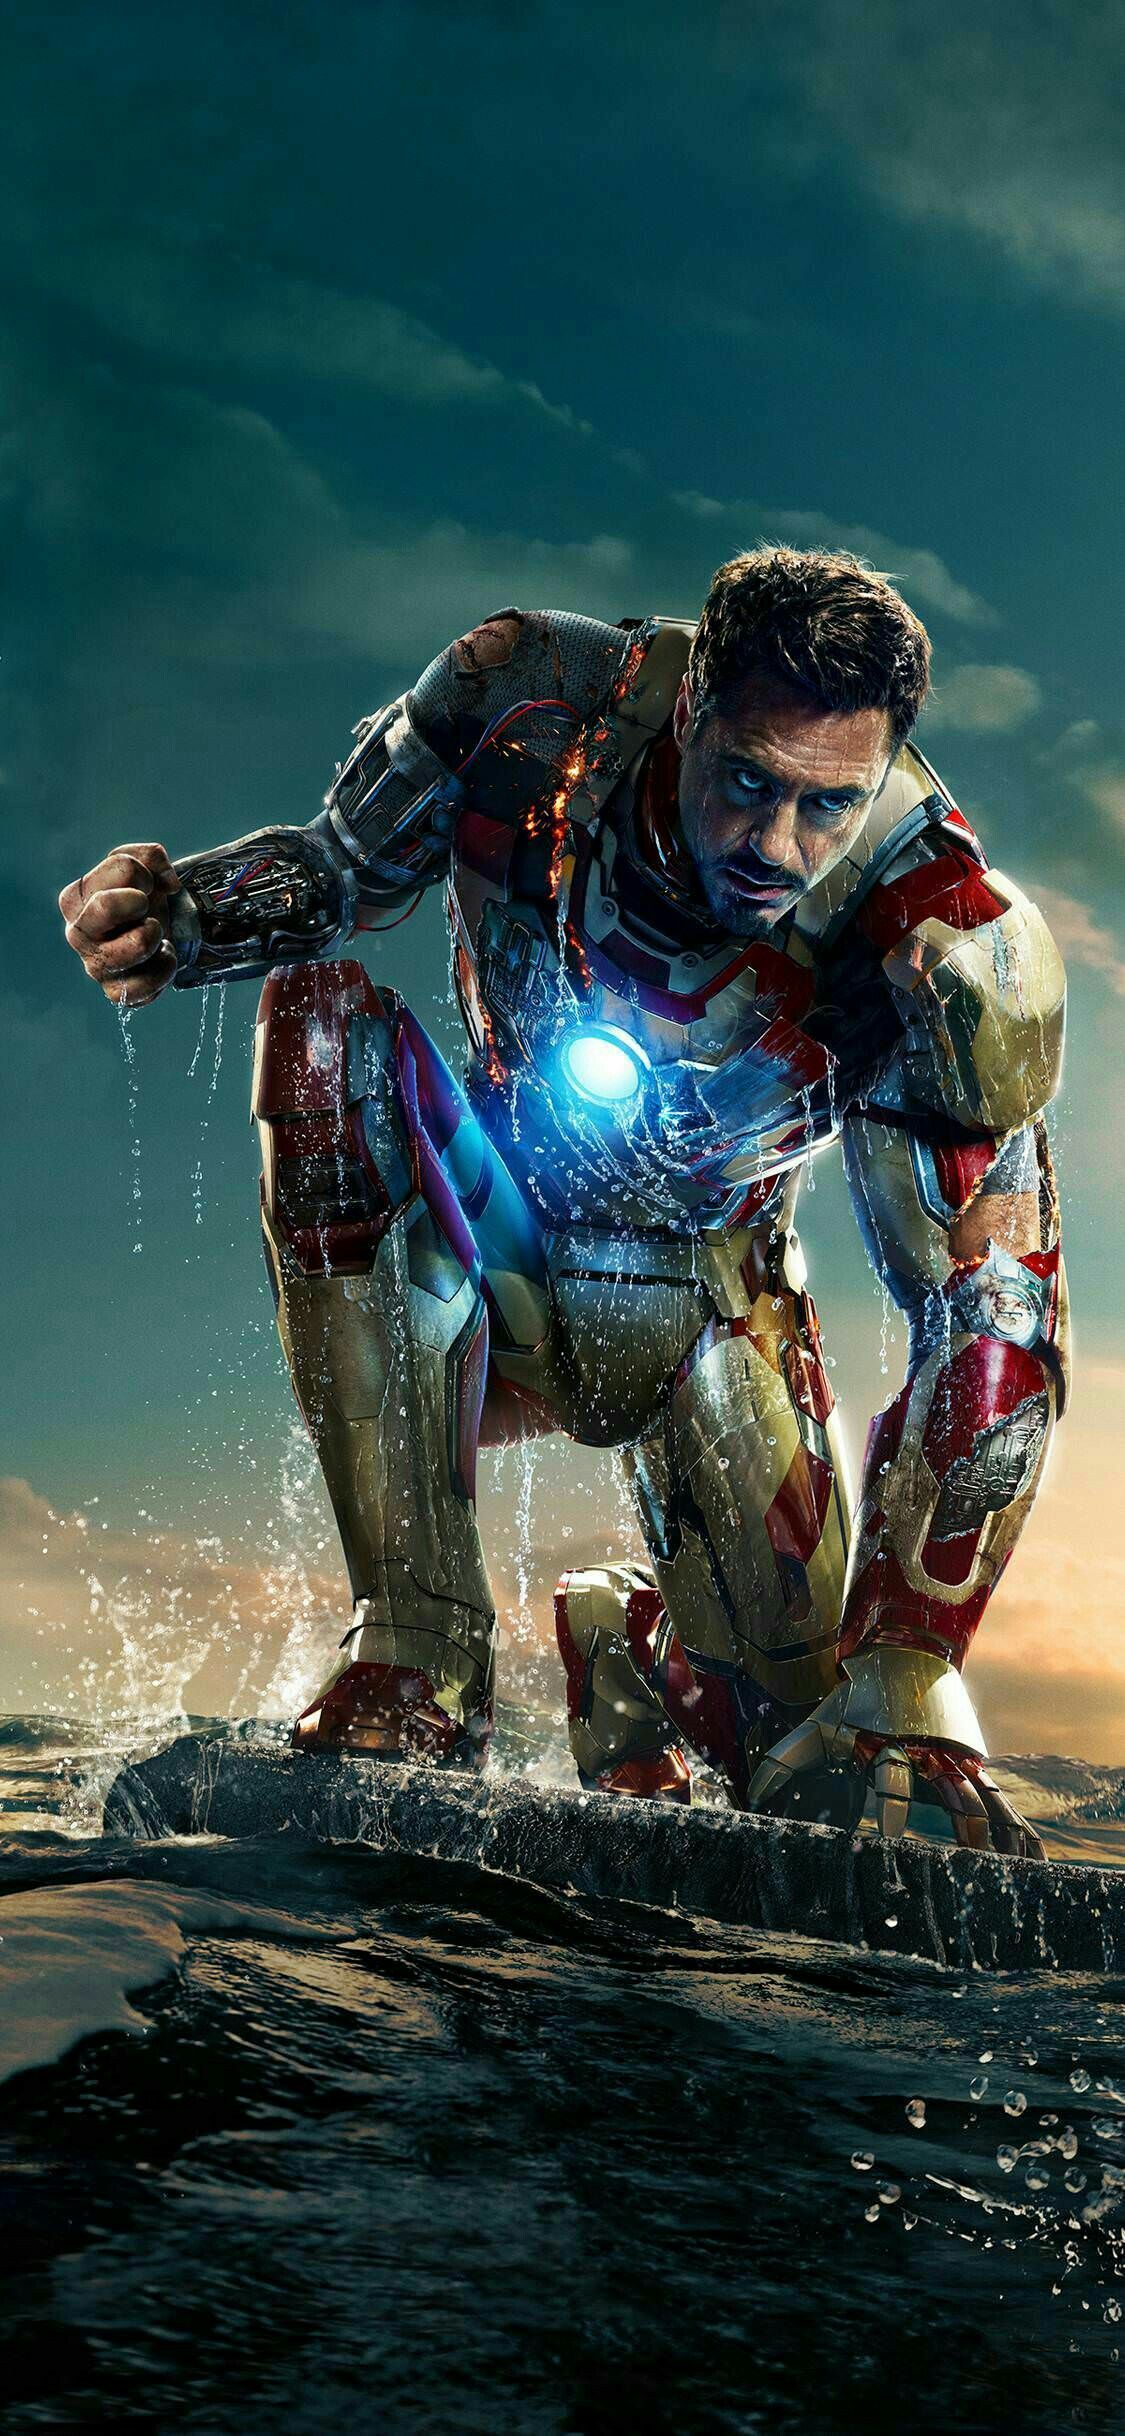 IRON MAN WALLPAPER. Iron man HD wallpaper, Iron man wallpaper, Tony stark wallpaper